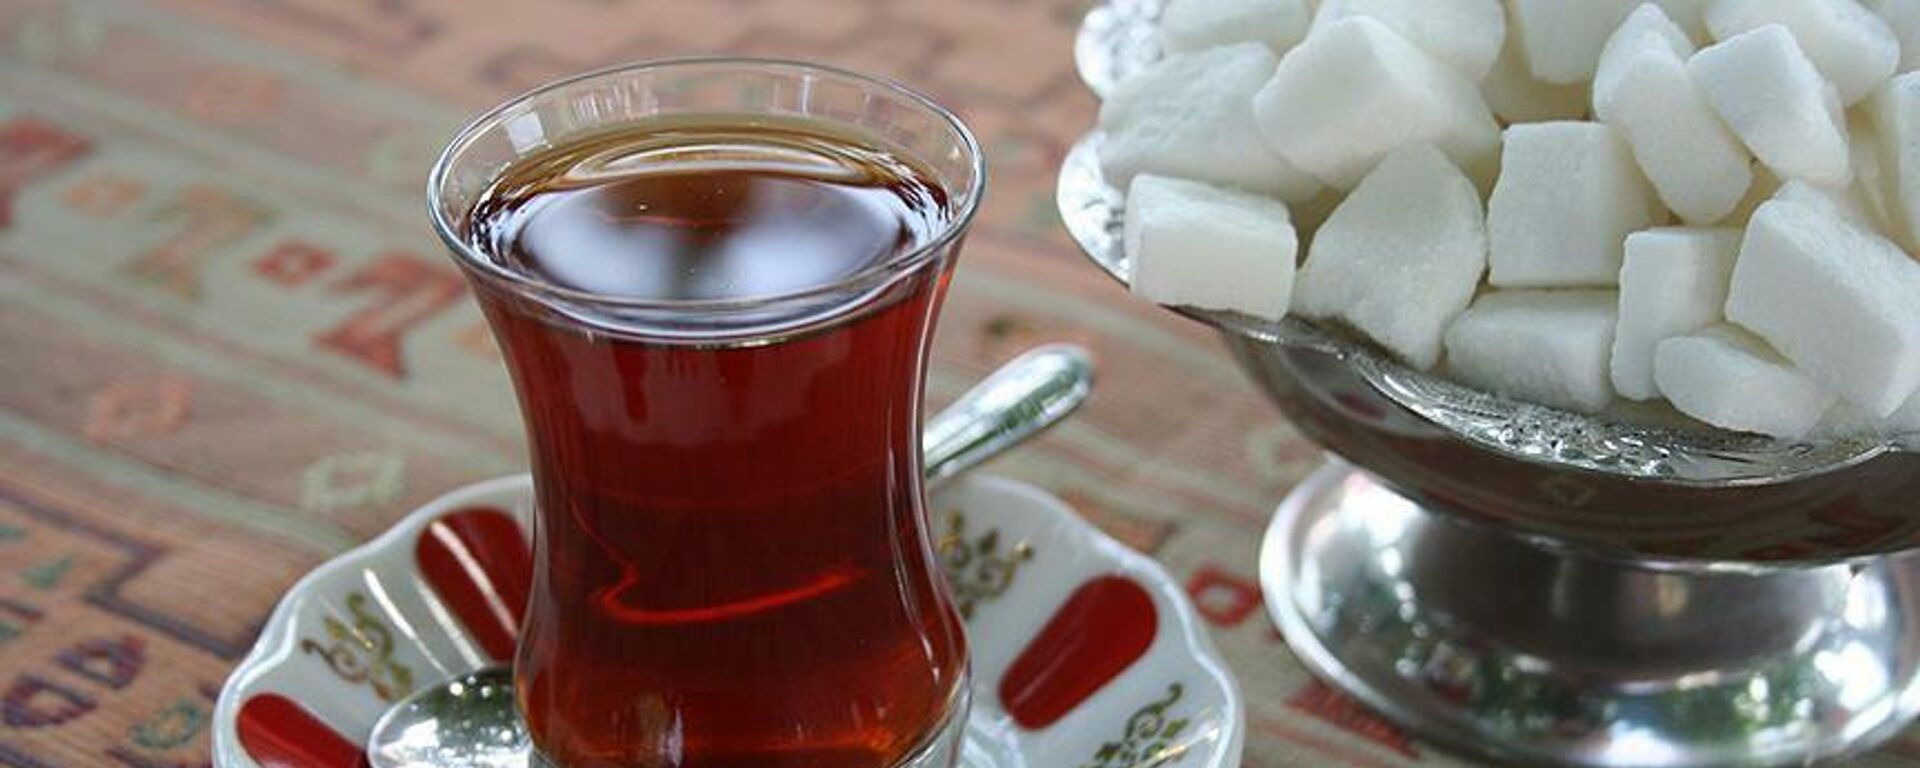 Çay bardağı, kıtlama şeker, ince belli bardak - Sputnik Türkiye, 1920, 17.11.2021